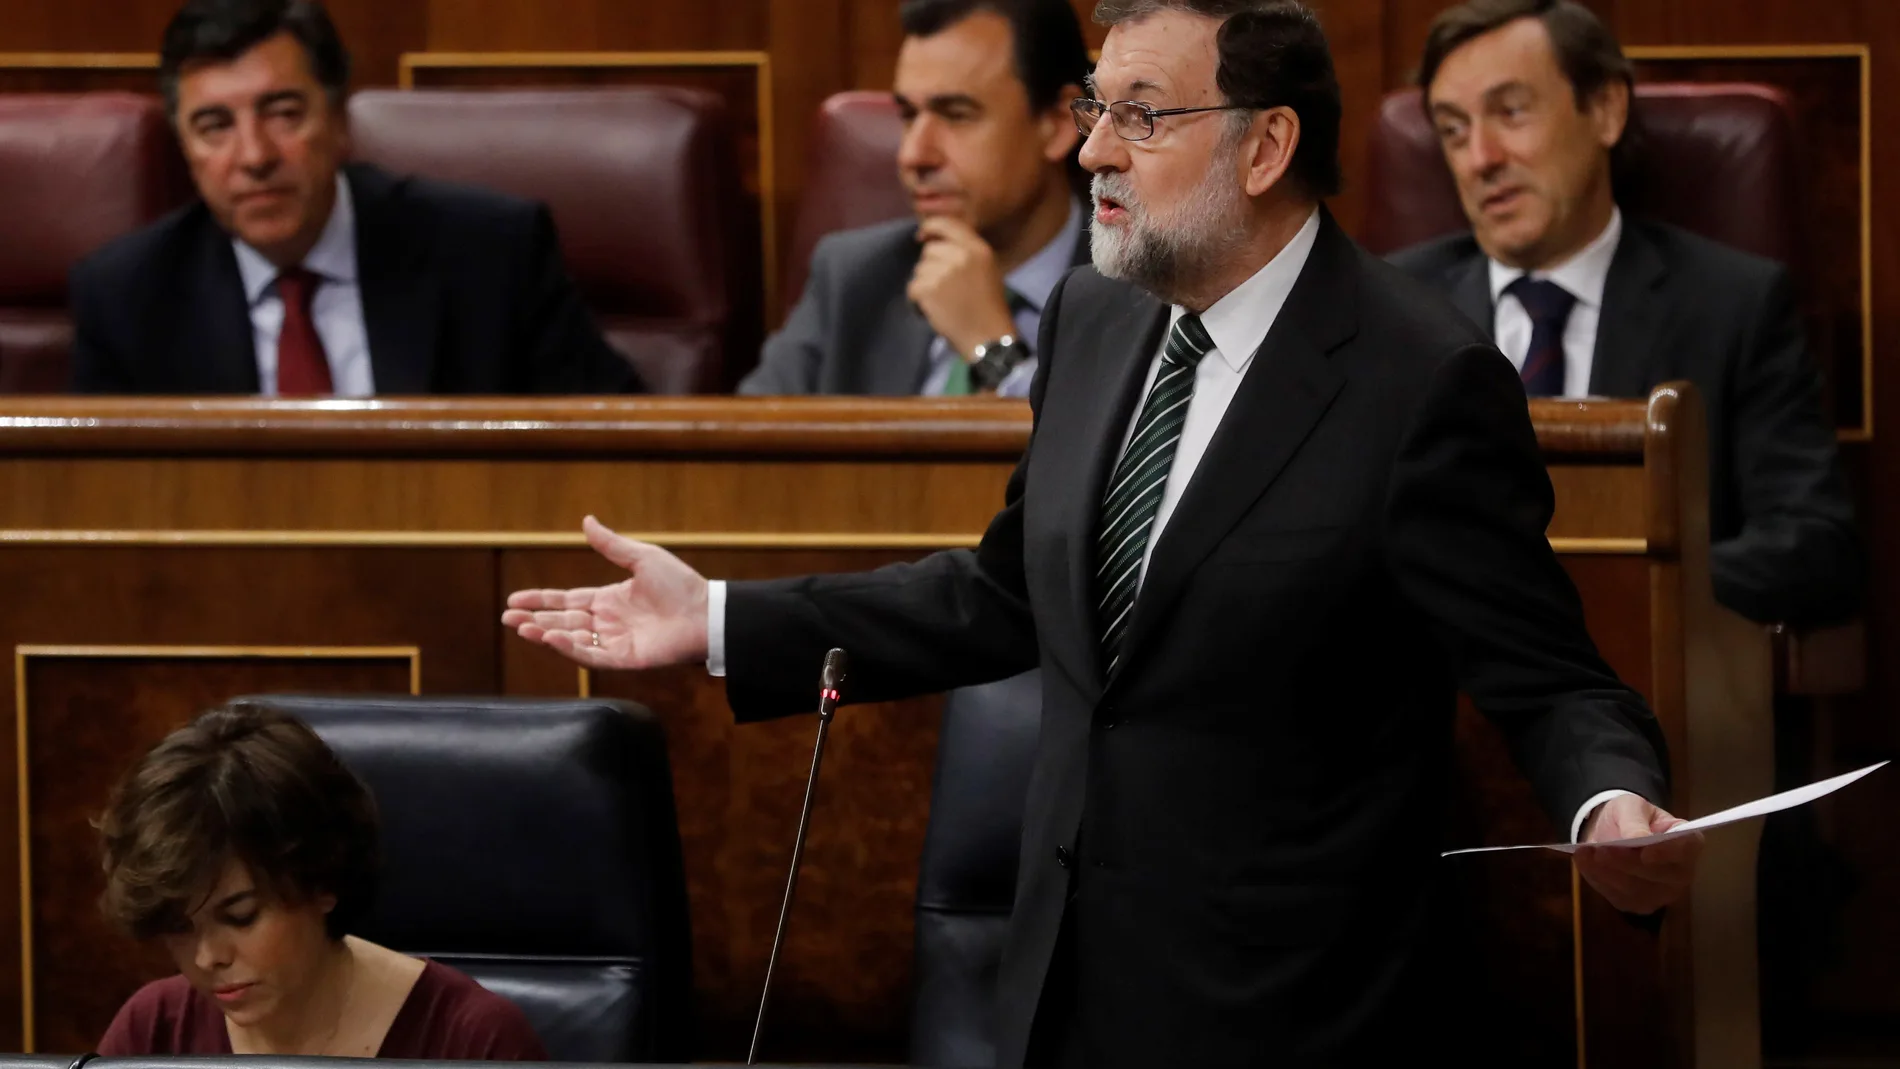 Rajoy pide a Puigdemont "sensatez" para evitar que tenga que aplicar el 155